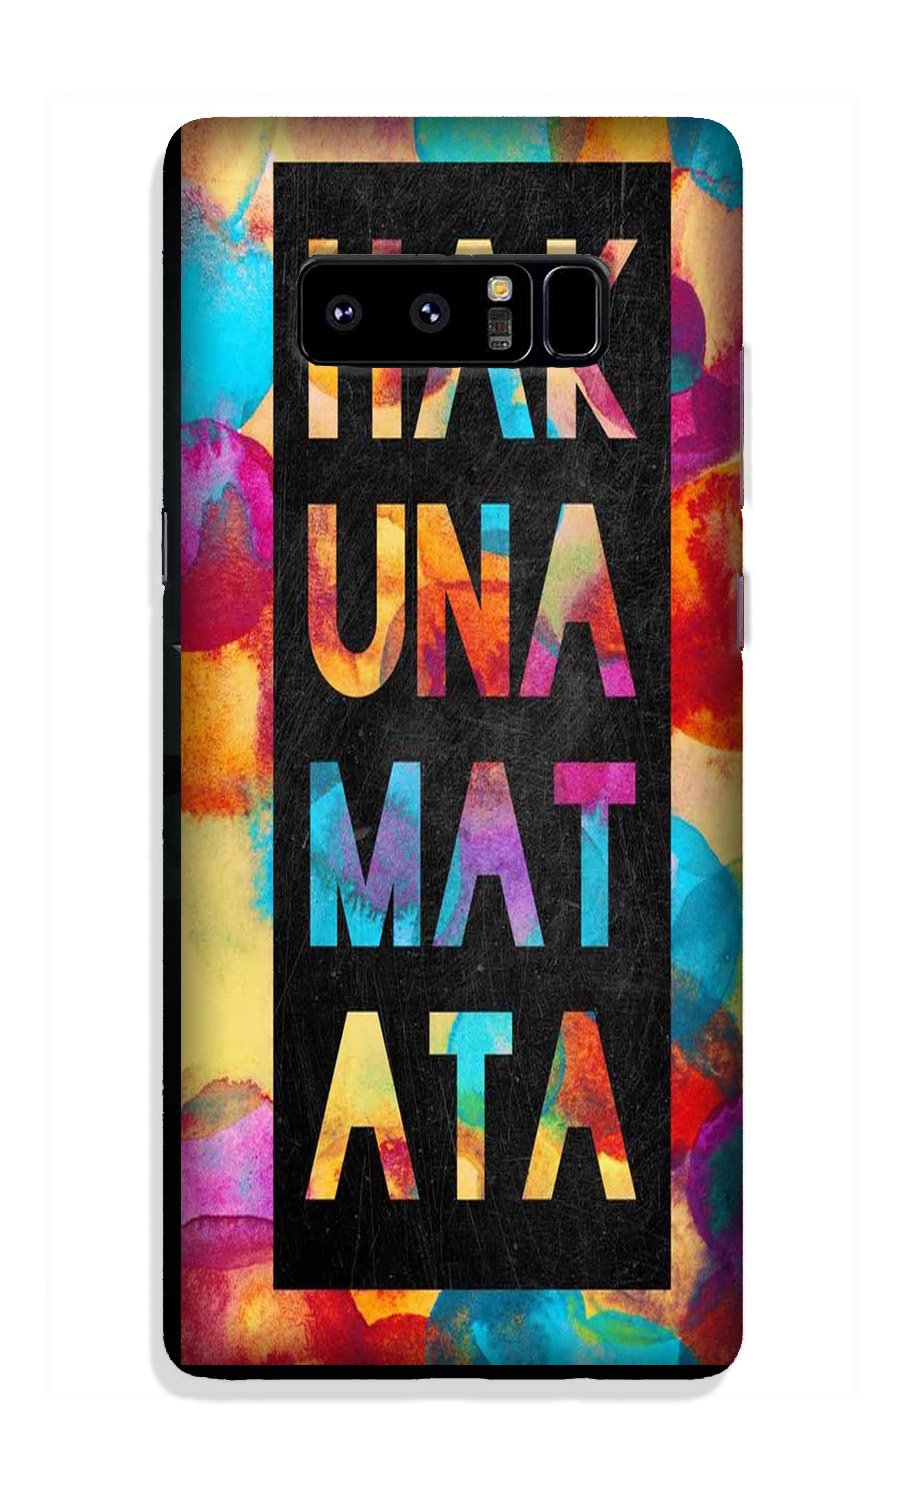 Hakuna Matata Mobile Back Case for Galaxy Note 8 (Design - 323)